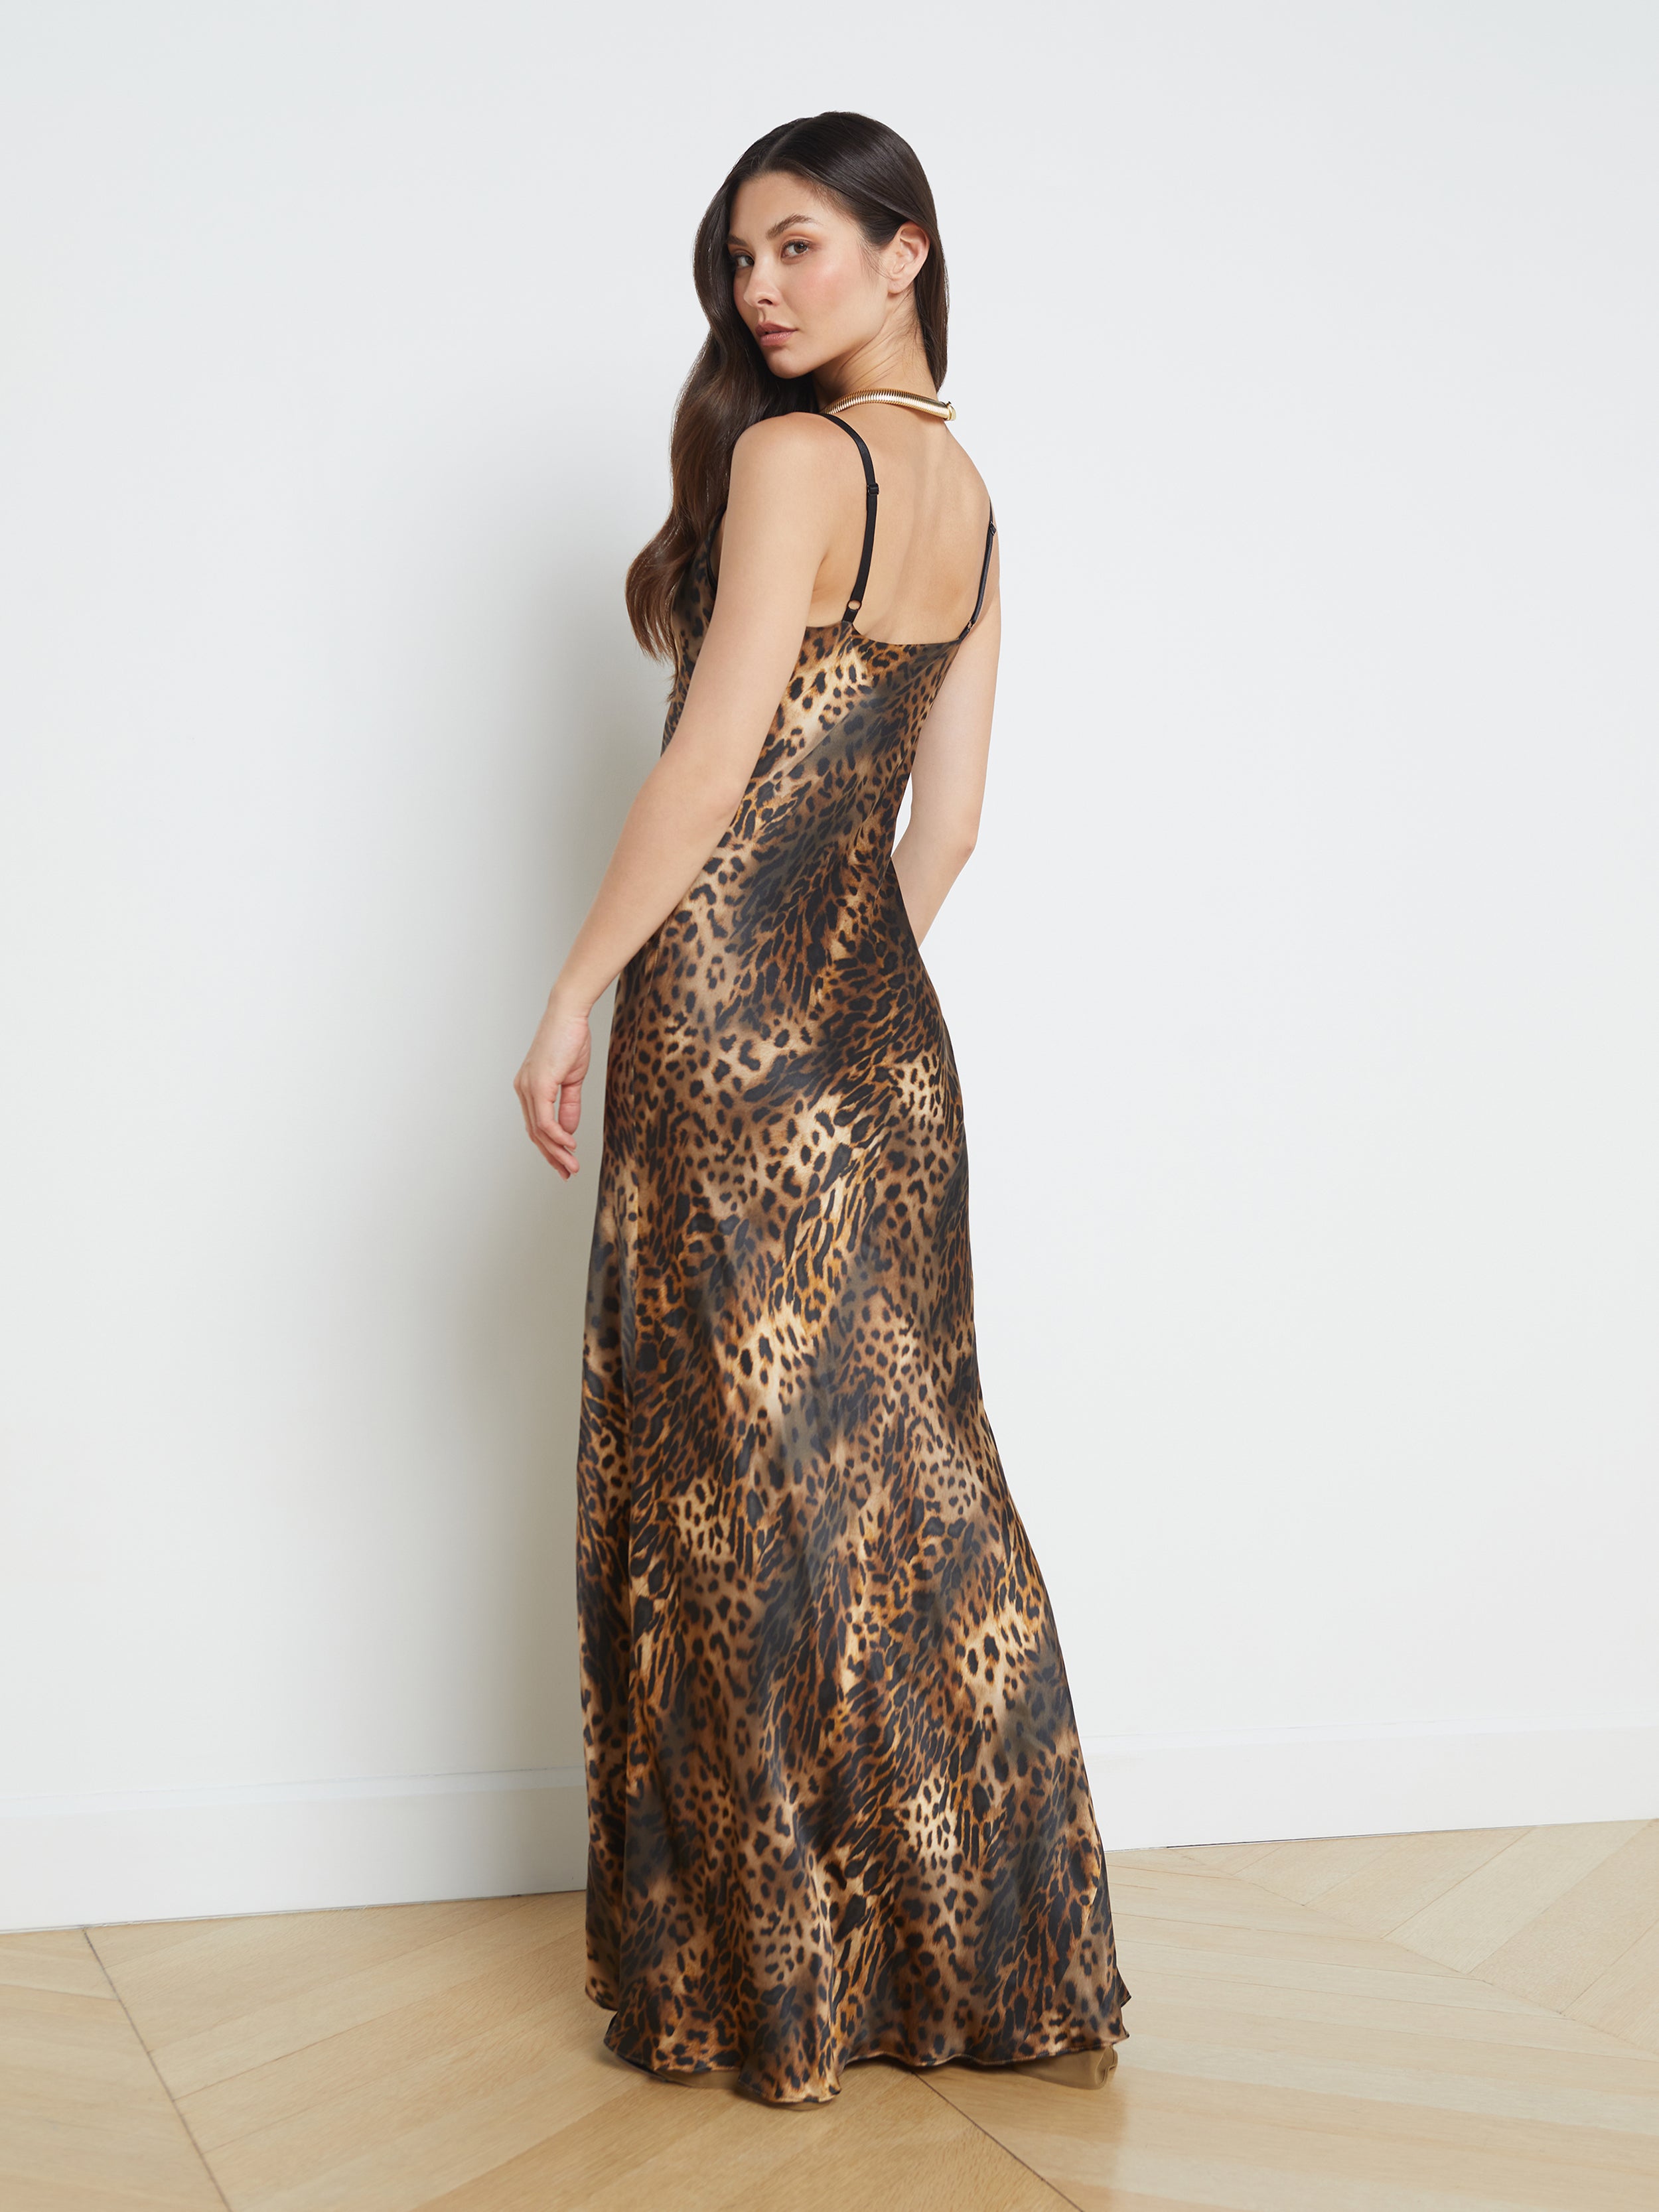 leopard print maxi dress